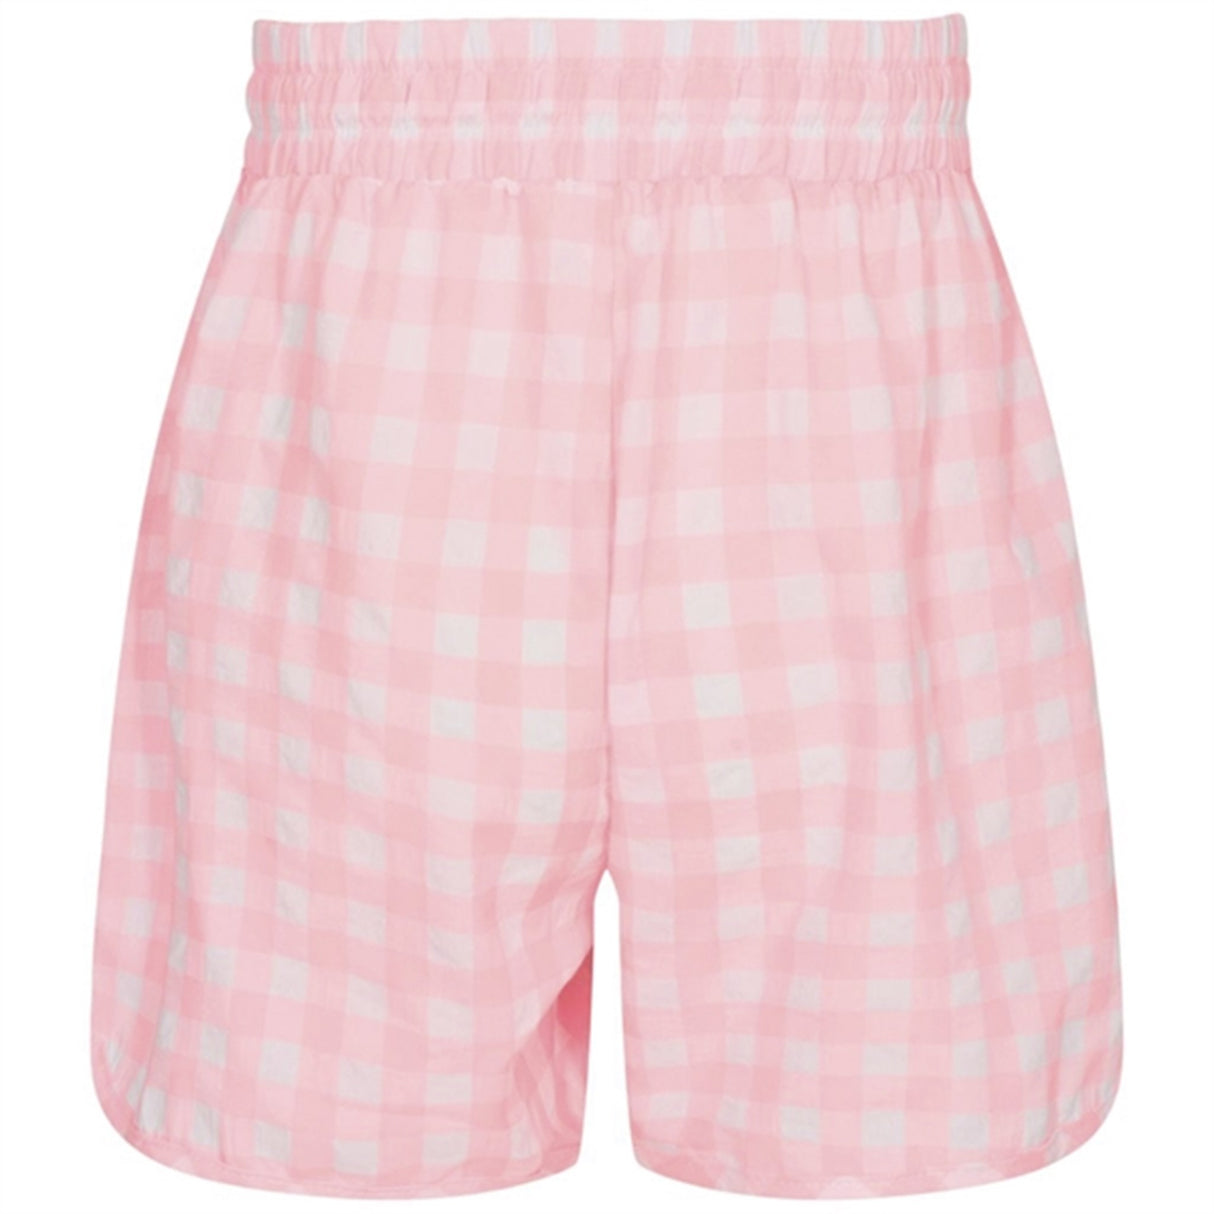 Sofie Schnoor Neon Pink Shorts 6